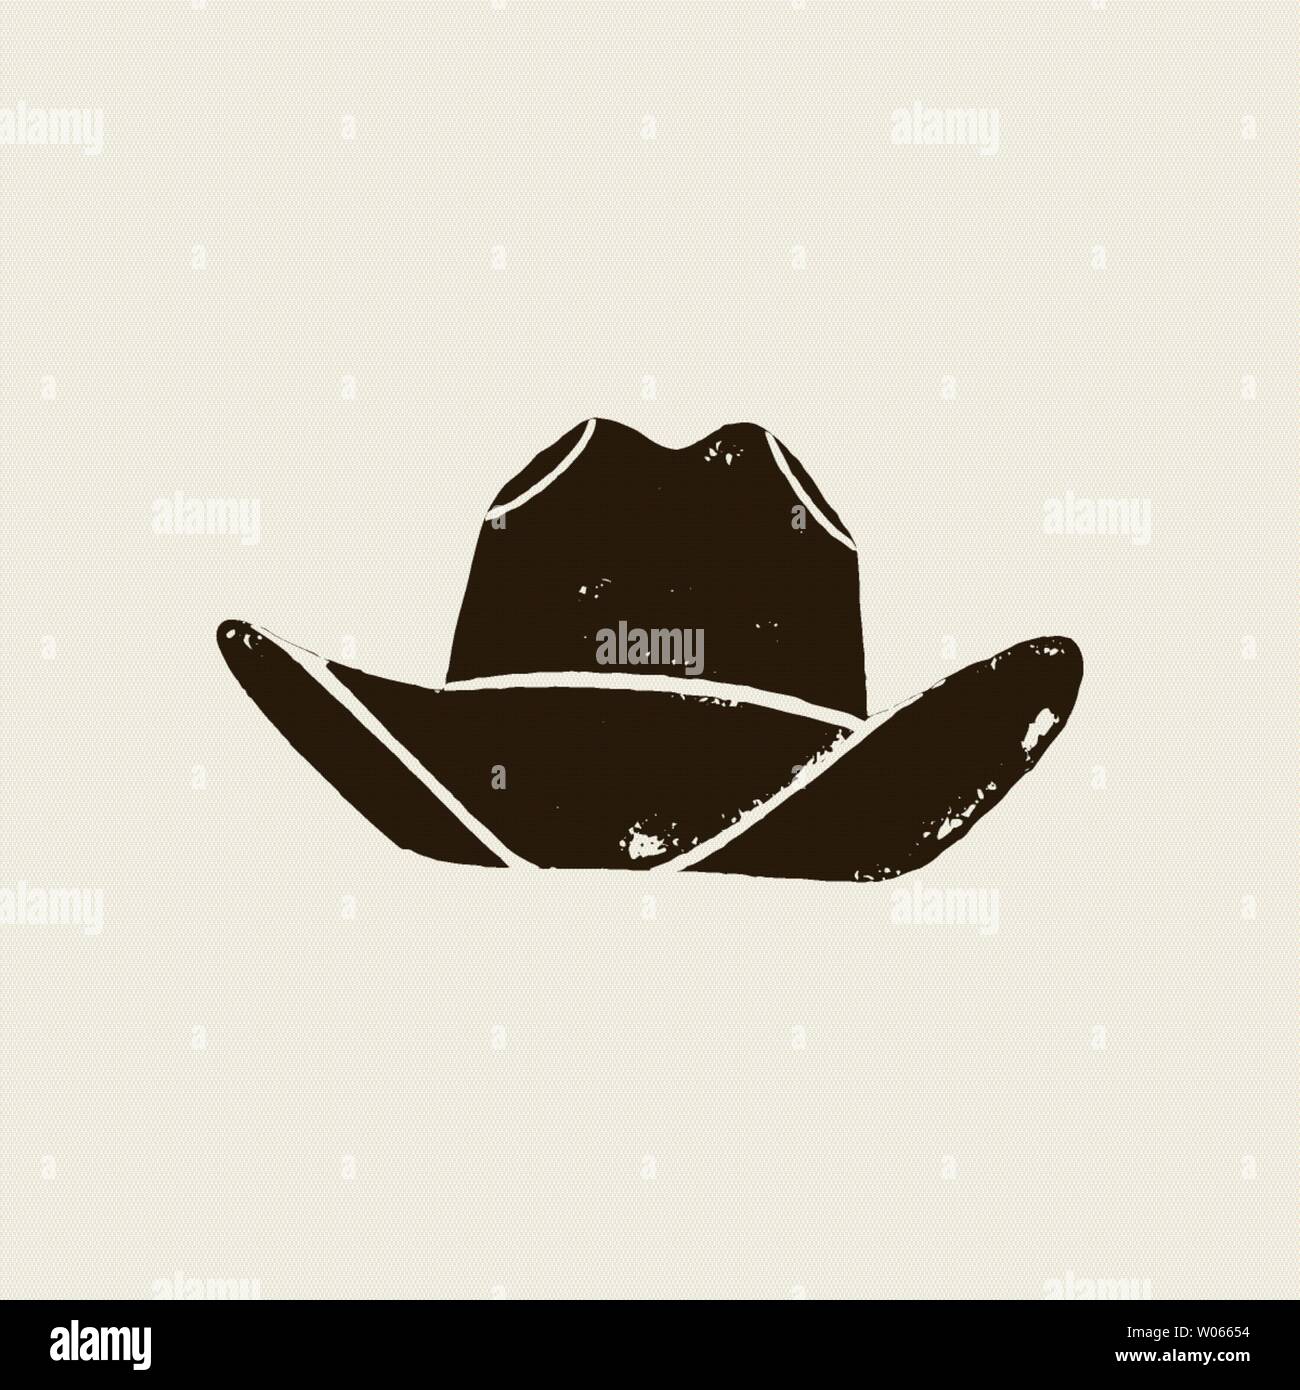 Illustrazione Vettoriale di cappello da cowboy. Hat silhouette in stile vintage , effetto grunge. Elementi del selvaggio West per la progettazione di poster, cartoline, le Illustrazione Vettoriale